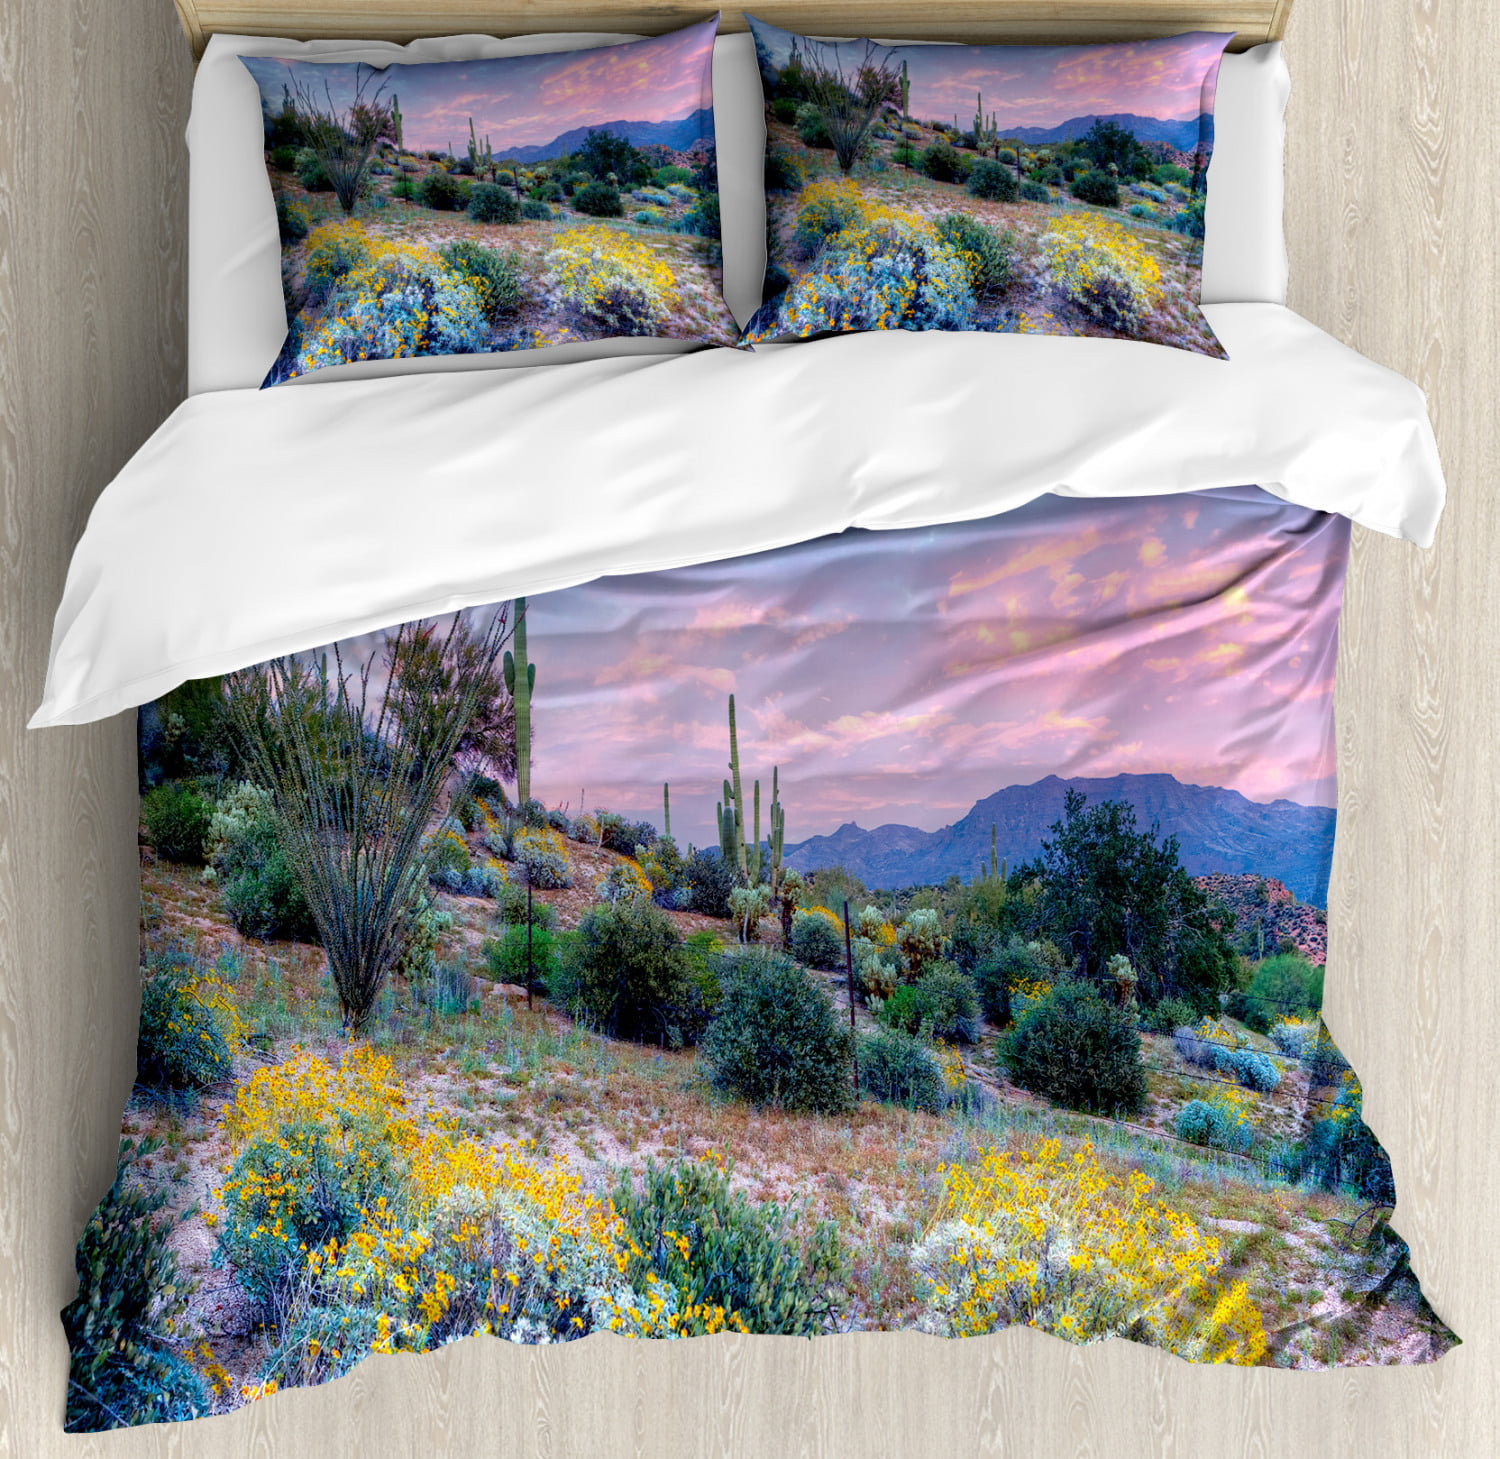 Details about   Lavender Tones Pillow Sham Decorative Pillowcase 3 Sizes Bedroom Decor Ambesonne 